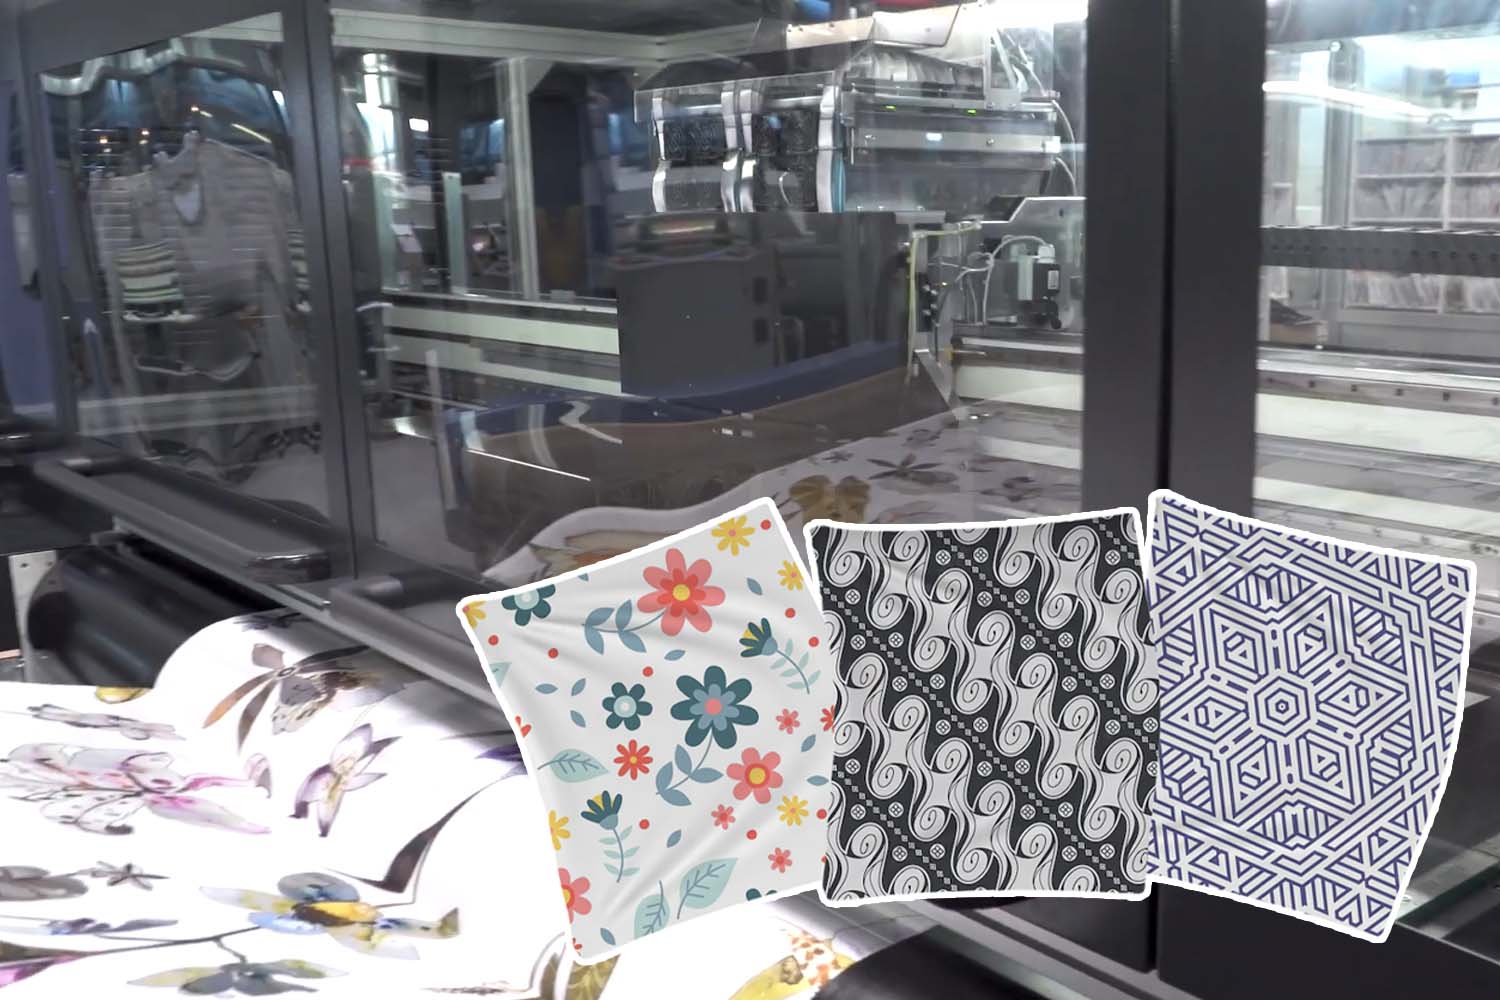 Kain Dengan Desain Unik Dicetak Oleh Printer Sublim Dan Direct To Fabric Untuk Peluang Bisnis Dekorasi Rumah.